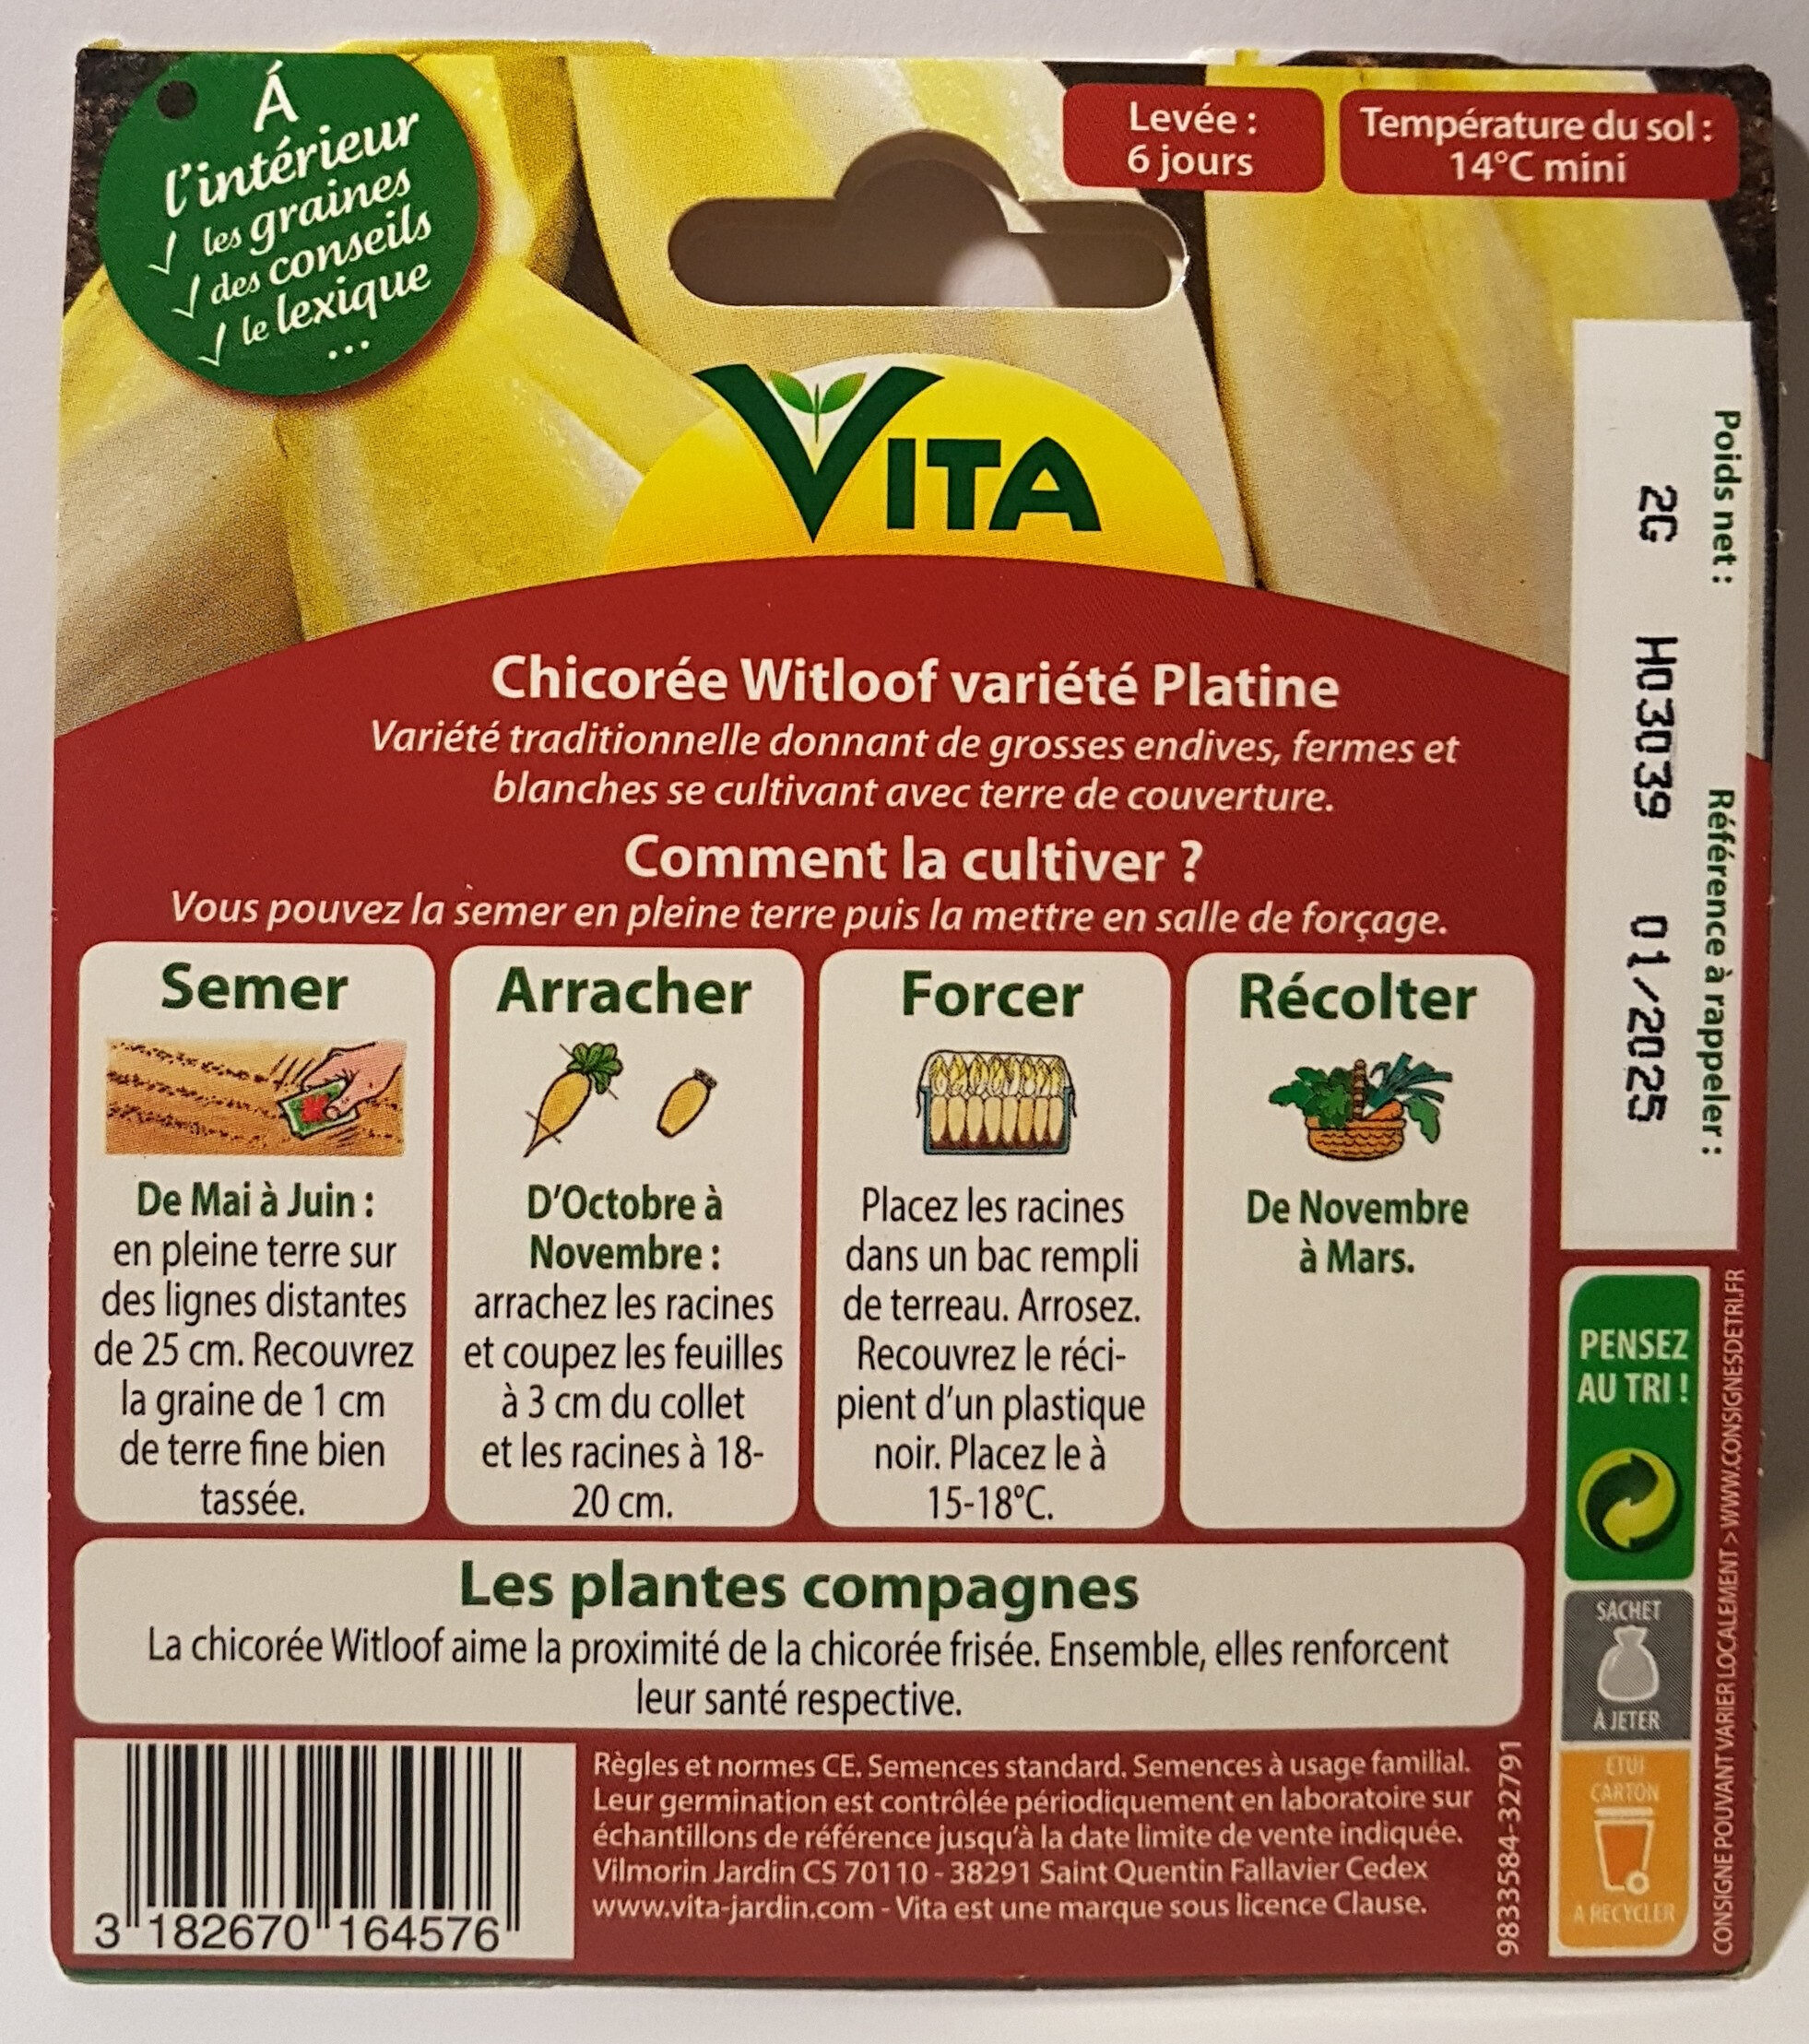 Chicorée Witloof Variété Platine - Ingredients - en